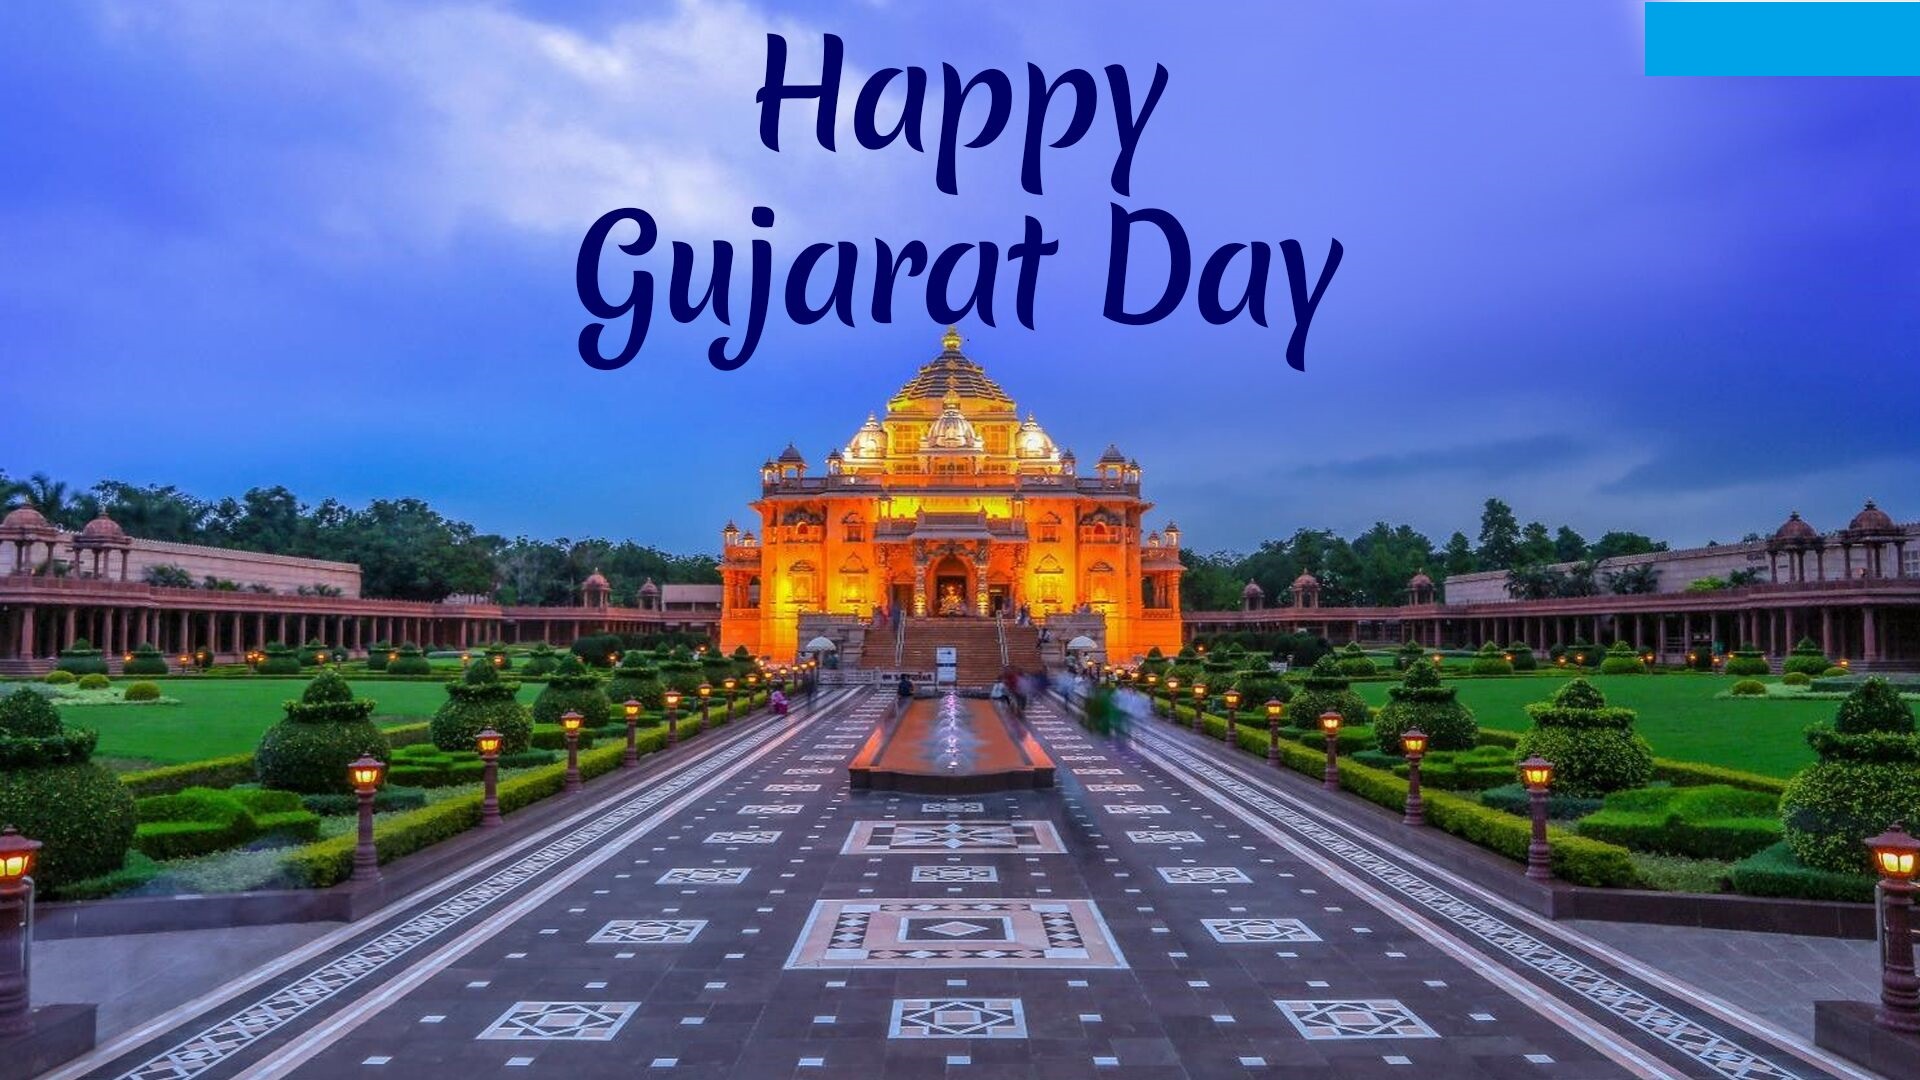 Gujarat Day 2019: गुजरात दिवस विशेस, मैसेज, SMS, शायरी, स्टेटस, कोट्स, इमेज